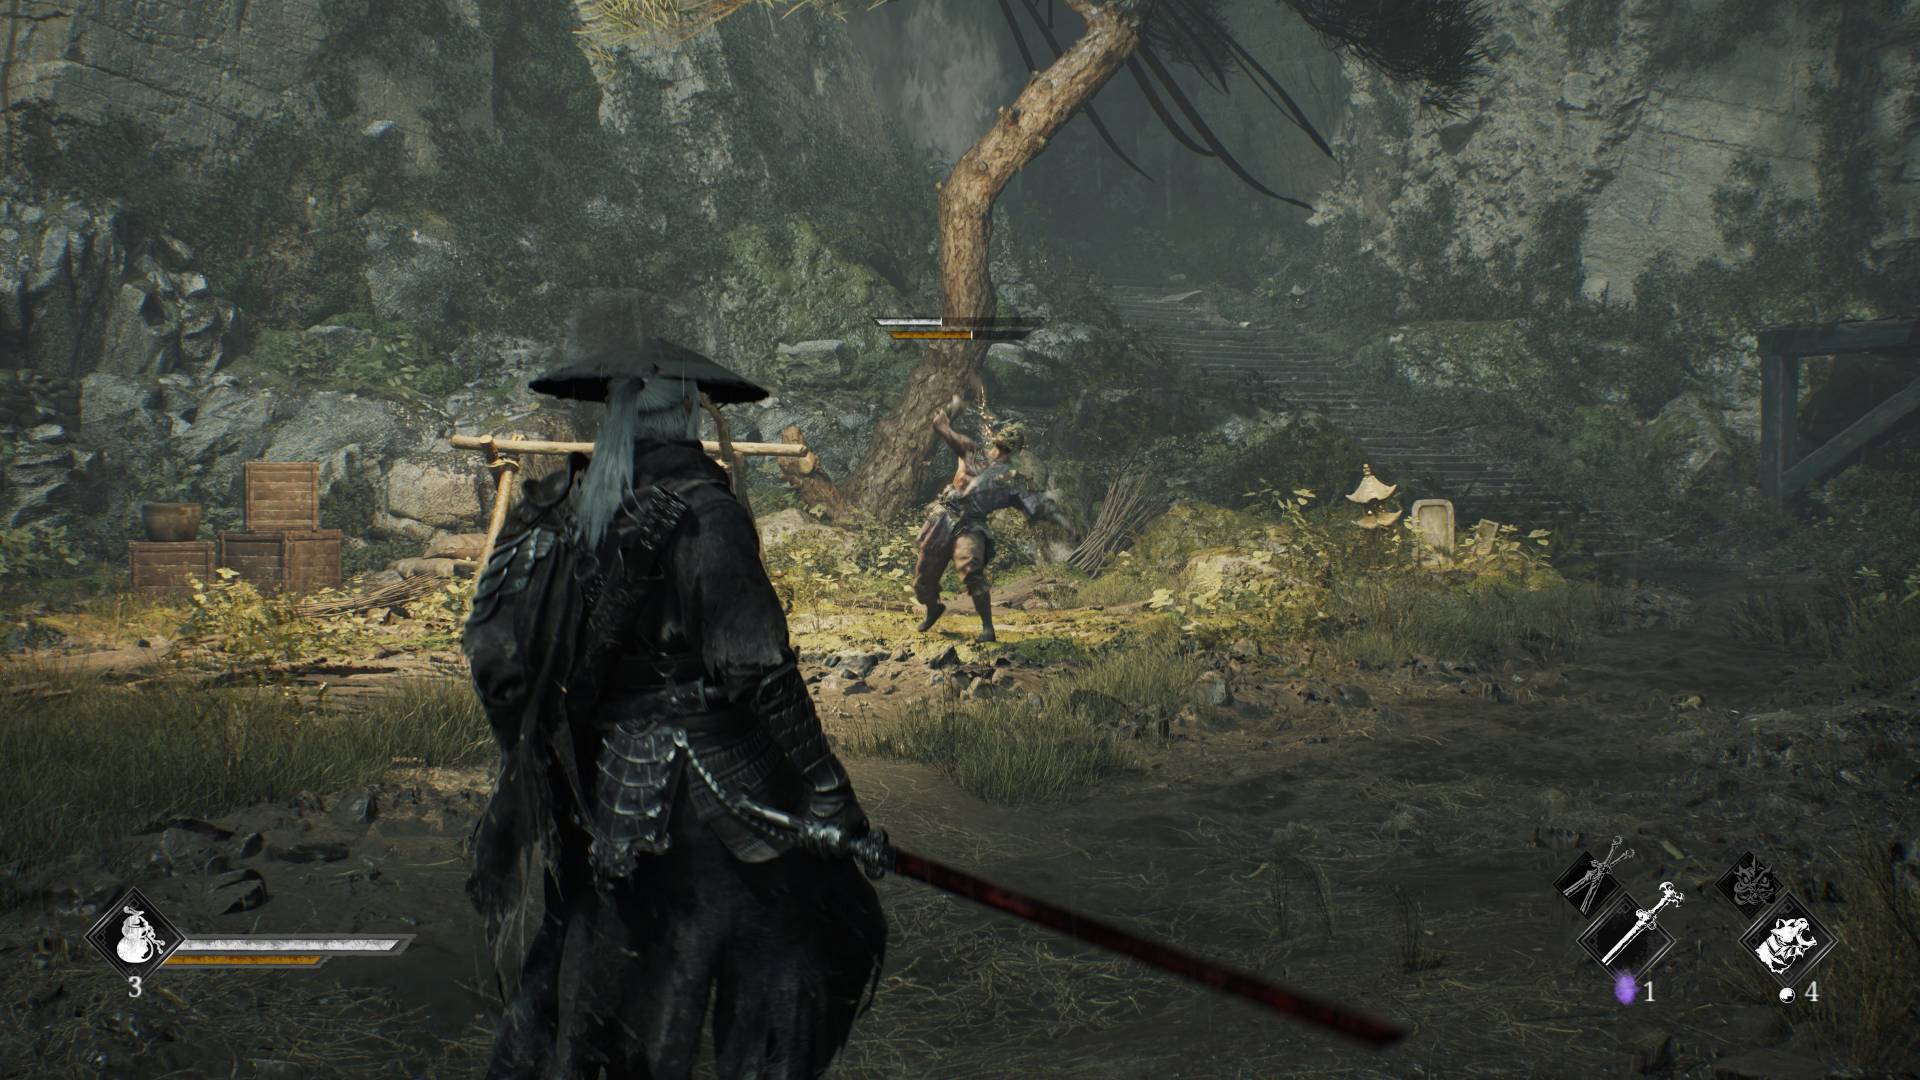 Uzun beyaz saçlı, büyük siyah geniş kenarlı bir şapka ve cübbe giyen bir samuray karakteri bahçe alanında hazır bir şekilde duruyor, karşısında ise zombi benzeri bir yaratık var